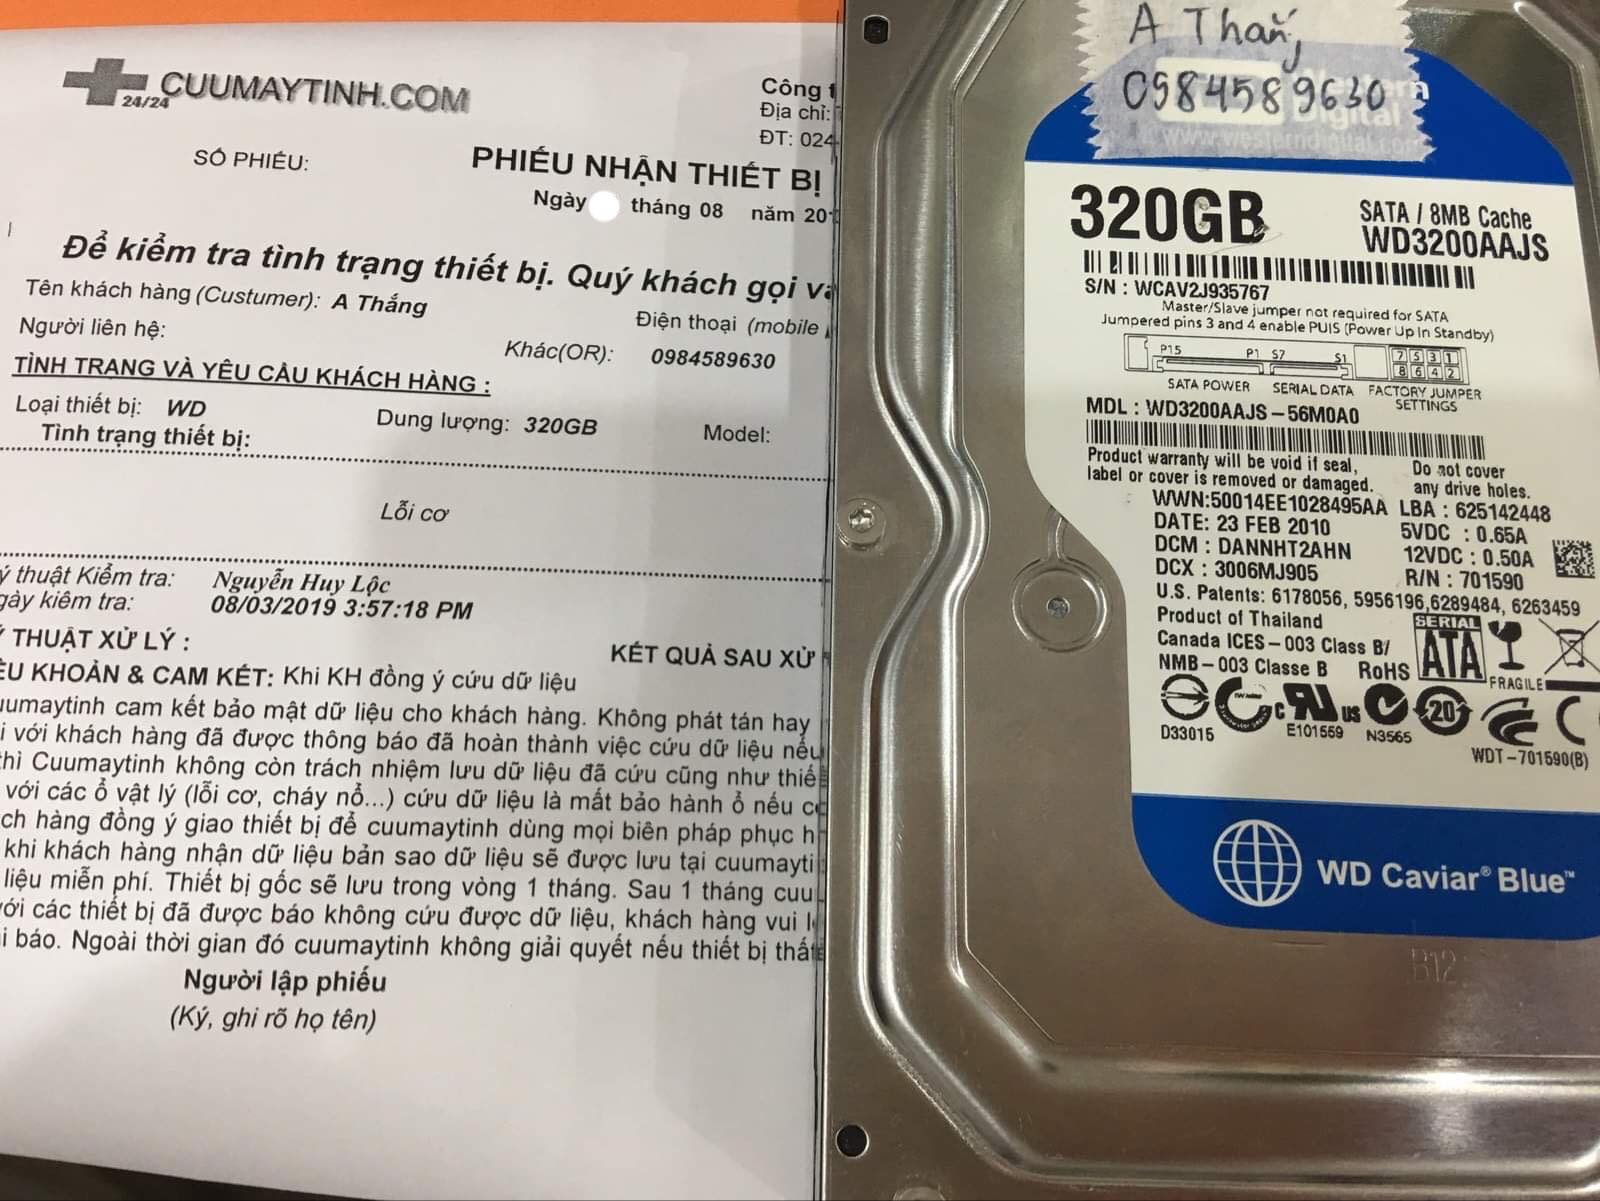 Phục hồi dữ liệu ổ cứng Western 320GB lỗi cơ 08/08/2019 - cuumaytinh